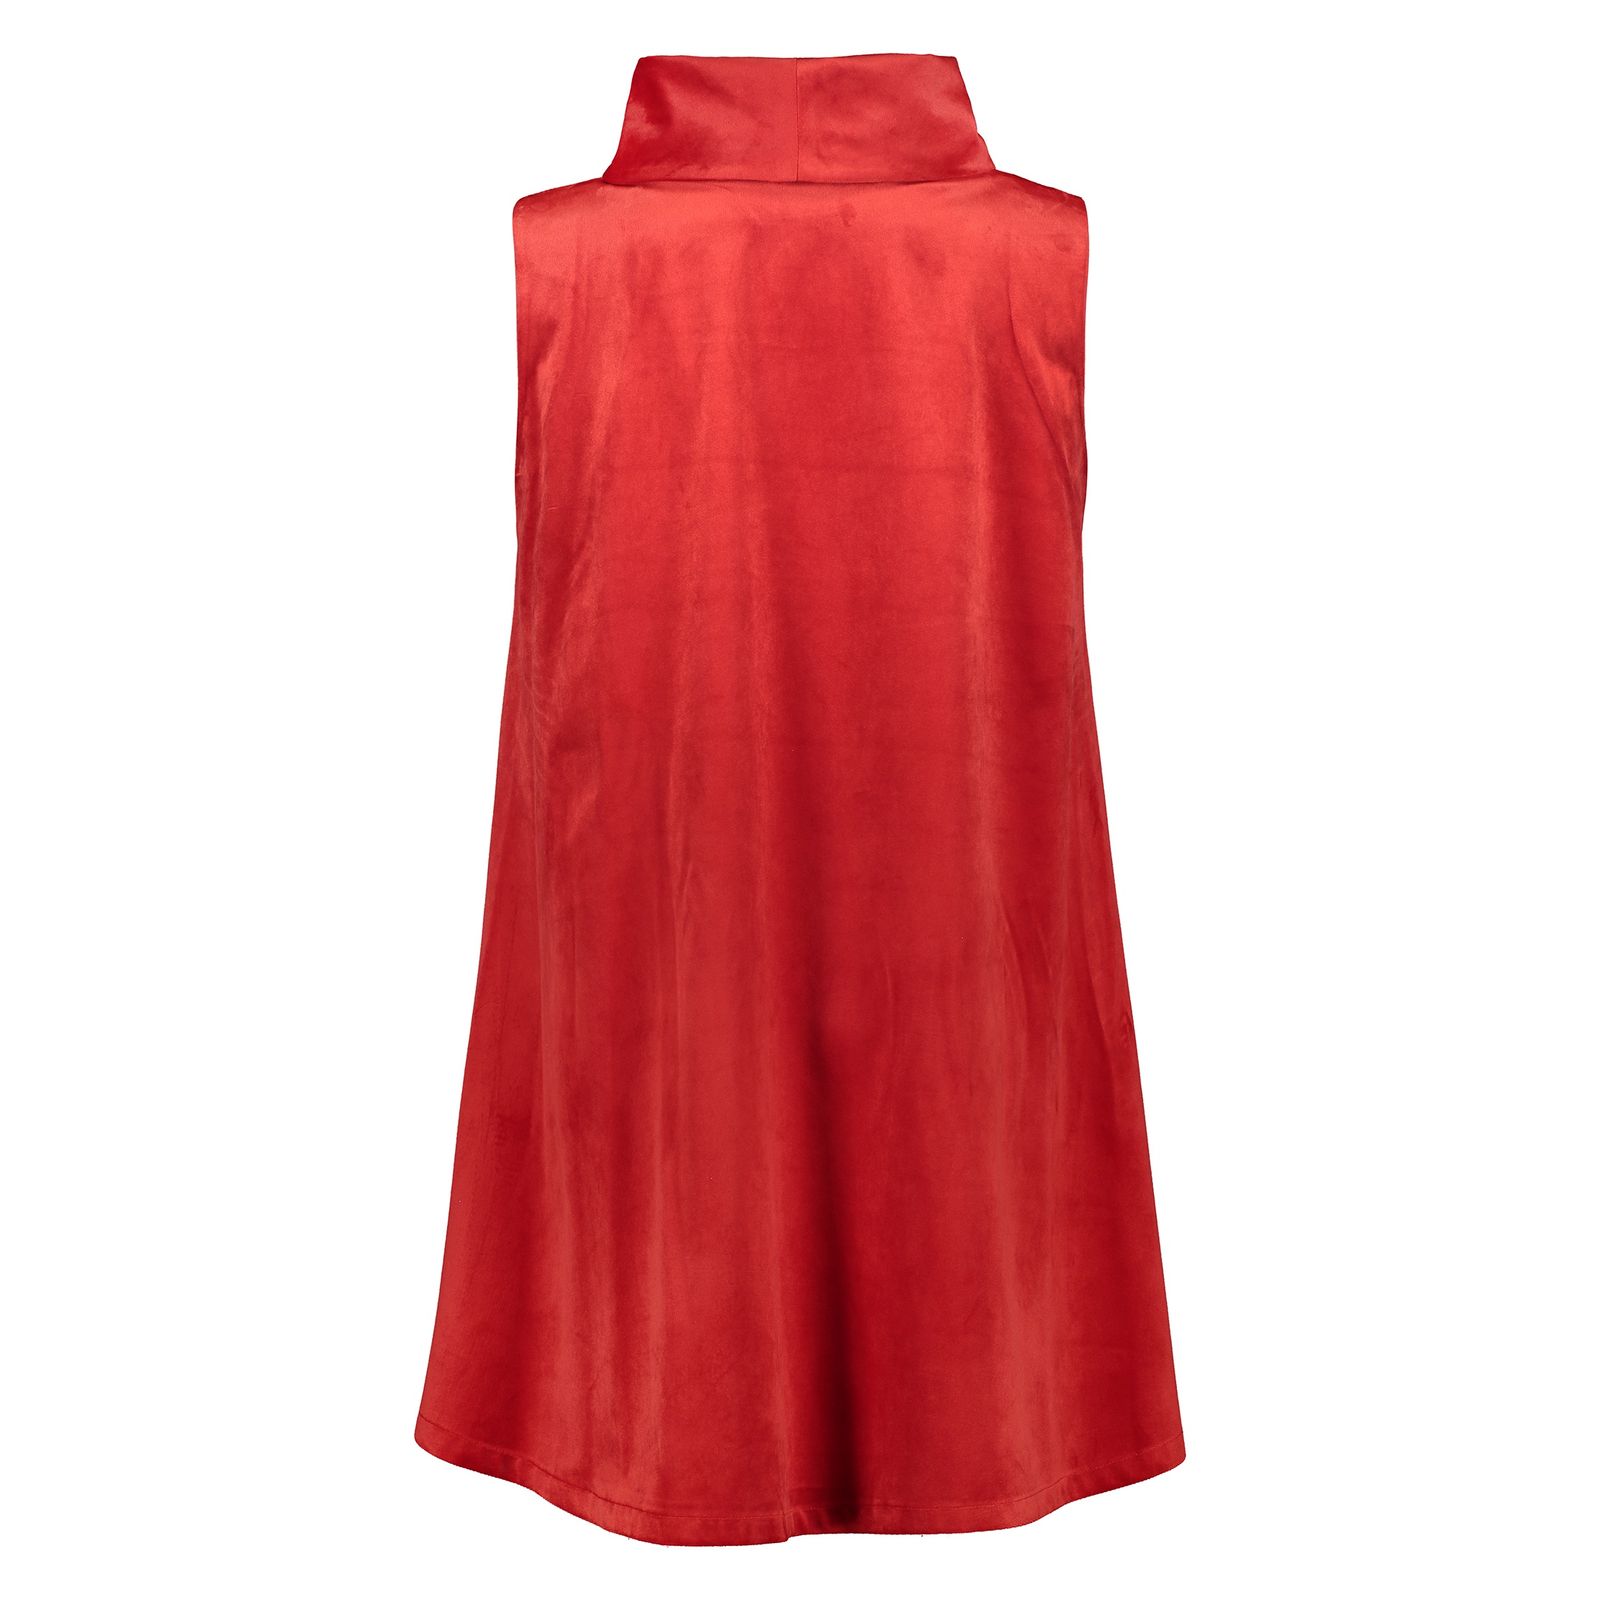 پیراهن زنانه هانن مدل 3001106-72 - قرمز - 4